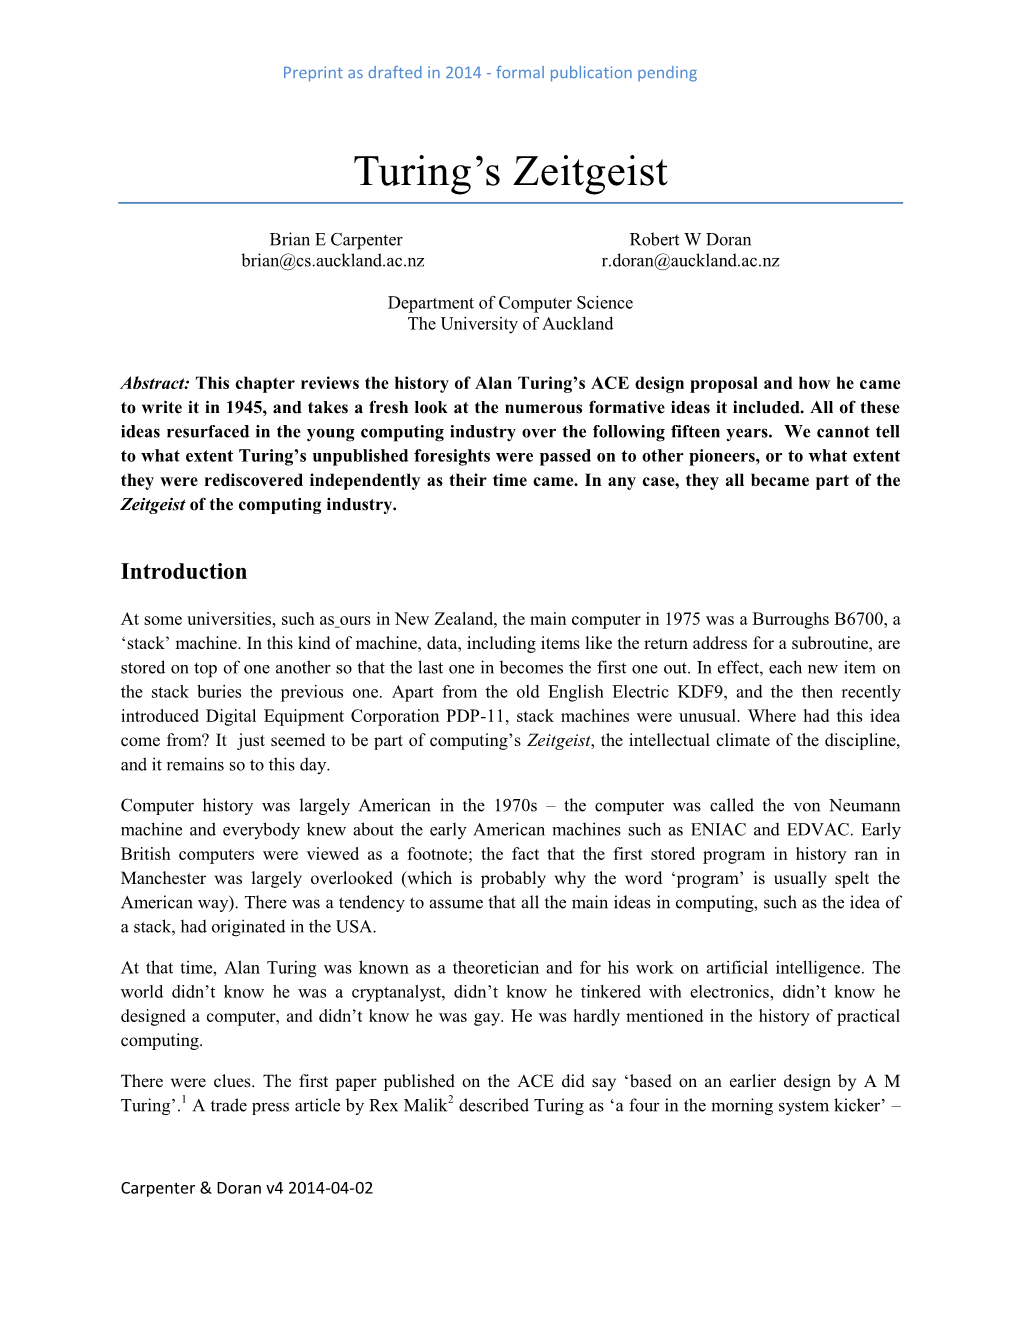 Turing's Zeitgeist